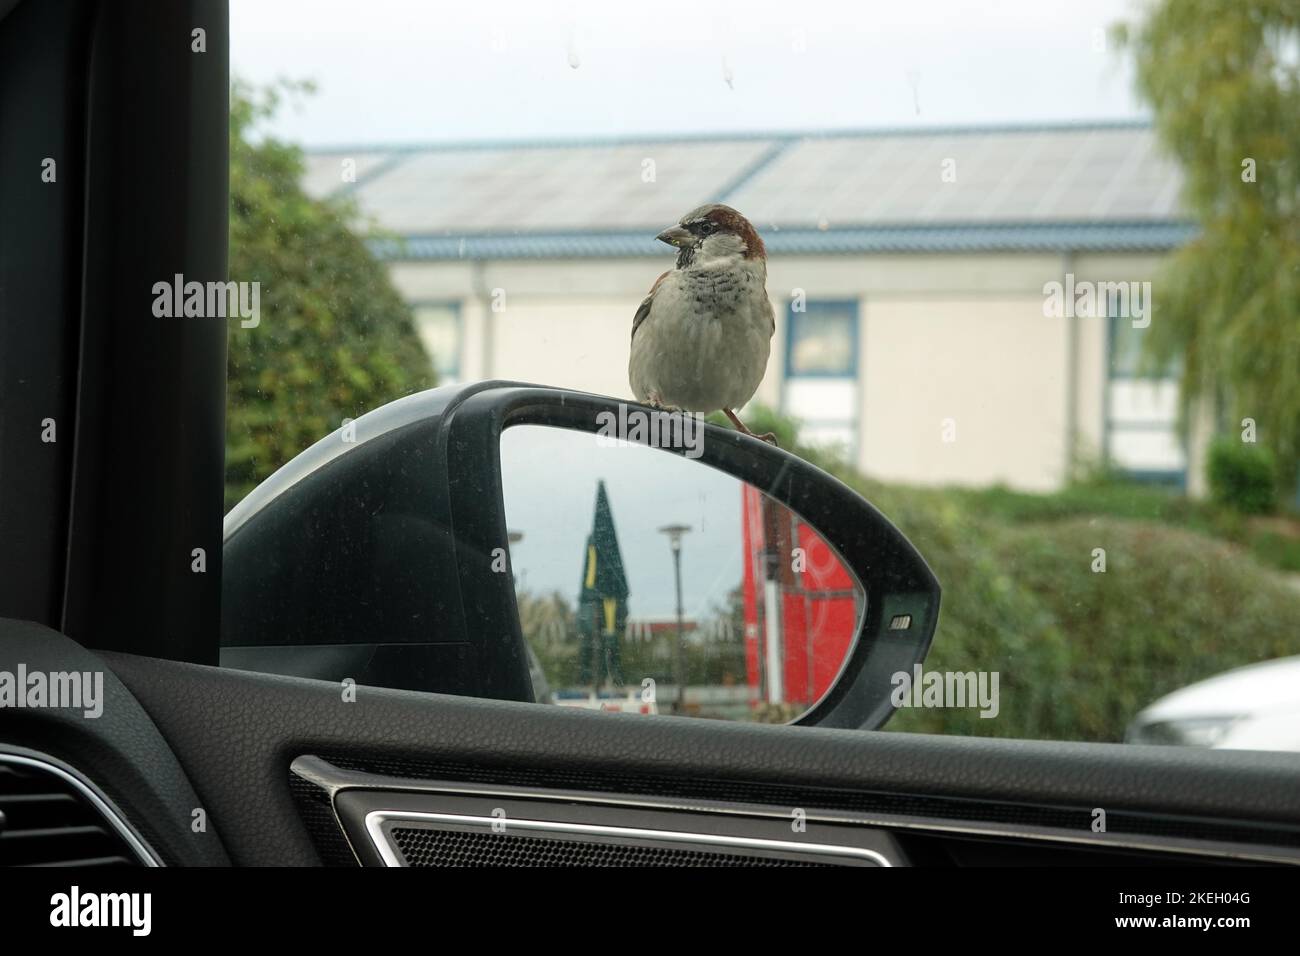 Haussperling (Passer domesticus), auf einem Autospegel sitzend, wartet auf dem Parkplatz eines Imbiss auf Futter, Niedersachsen, Deutschland, Bad Foto Stock